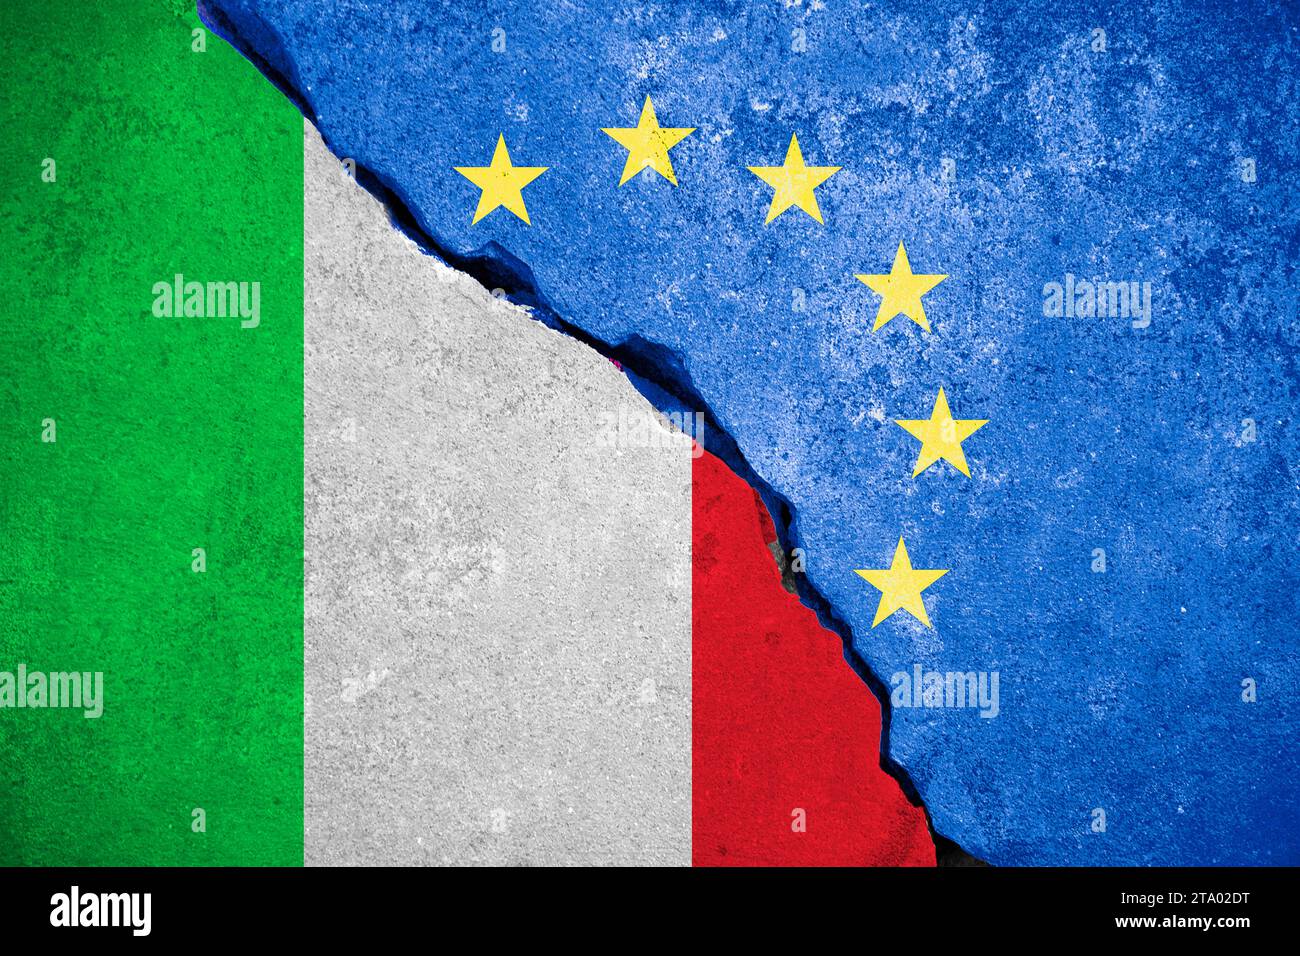 italexit bleu Union européenne drapeau de l'UE sur mur brisé et demi drapeau italien, vote pour référendum italie sortie de l'europe concept Banque D'Images